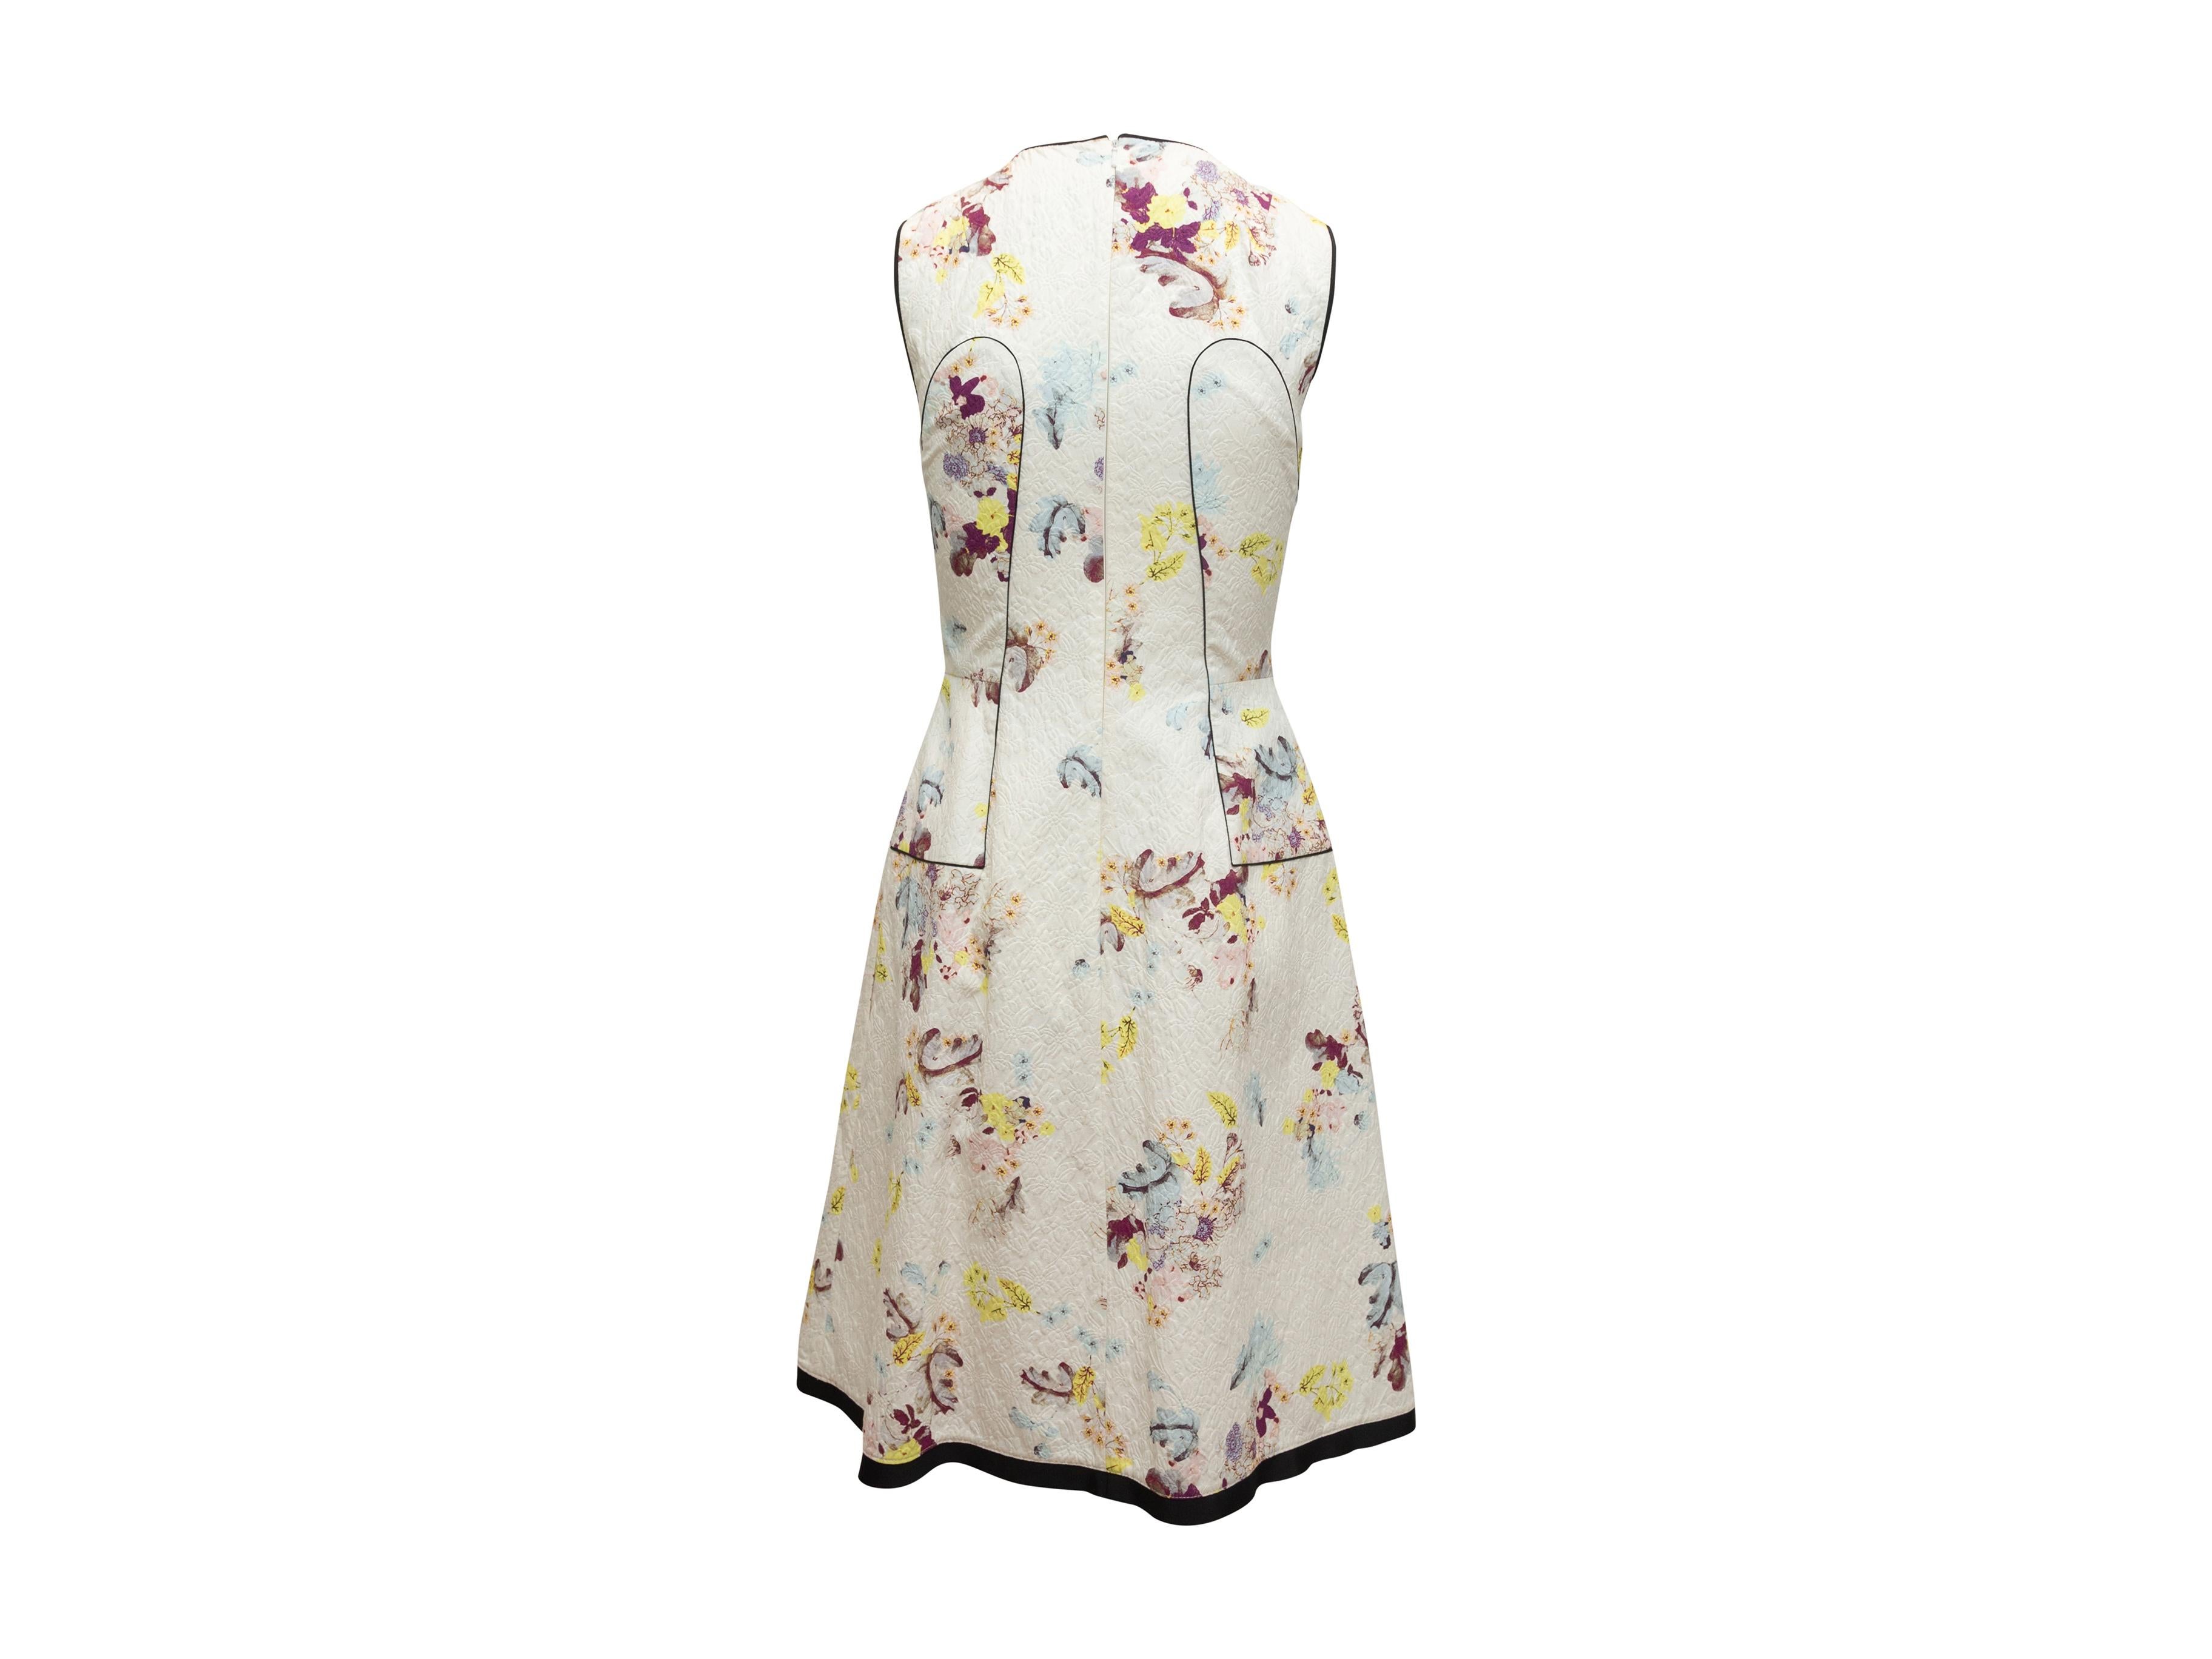 Women's Erdem White & Multicolor Floral Print Sleeveless Dress